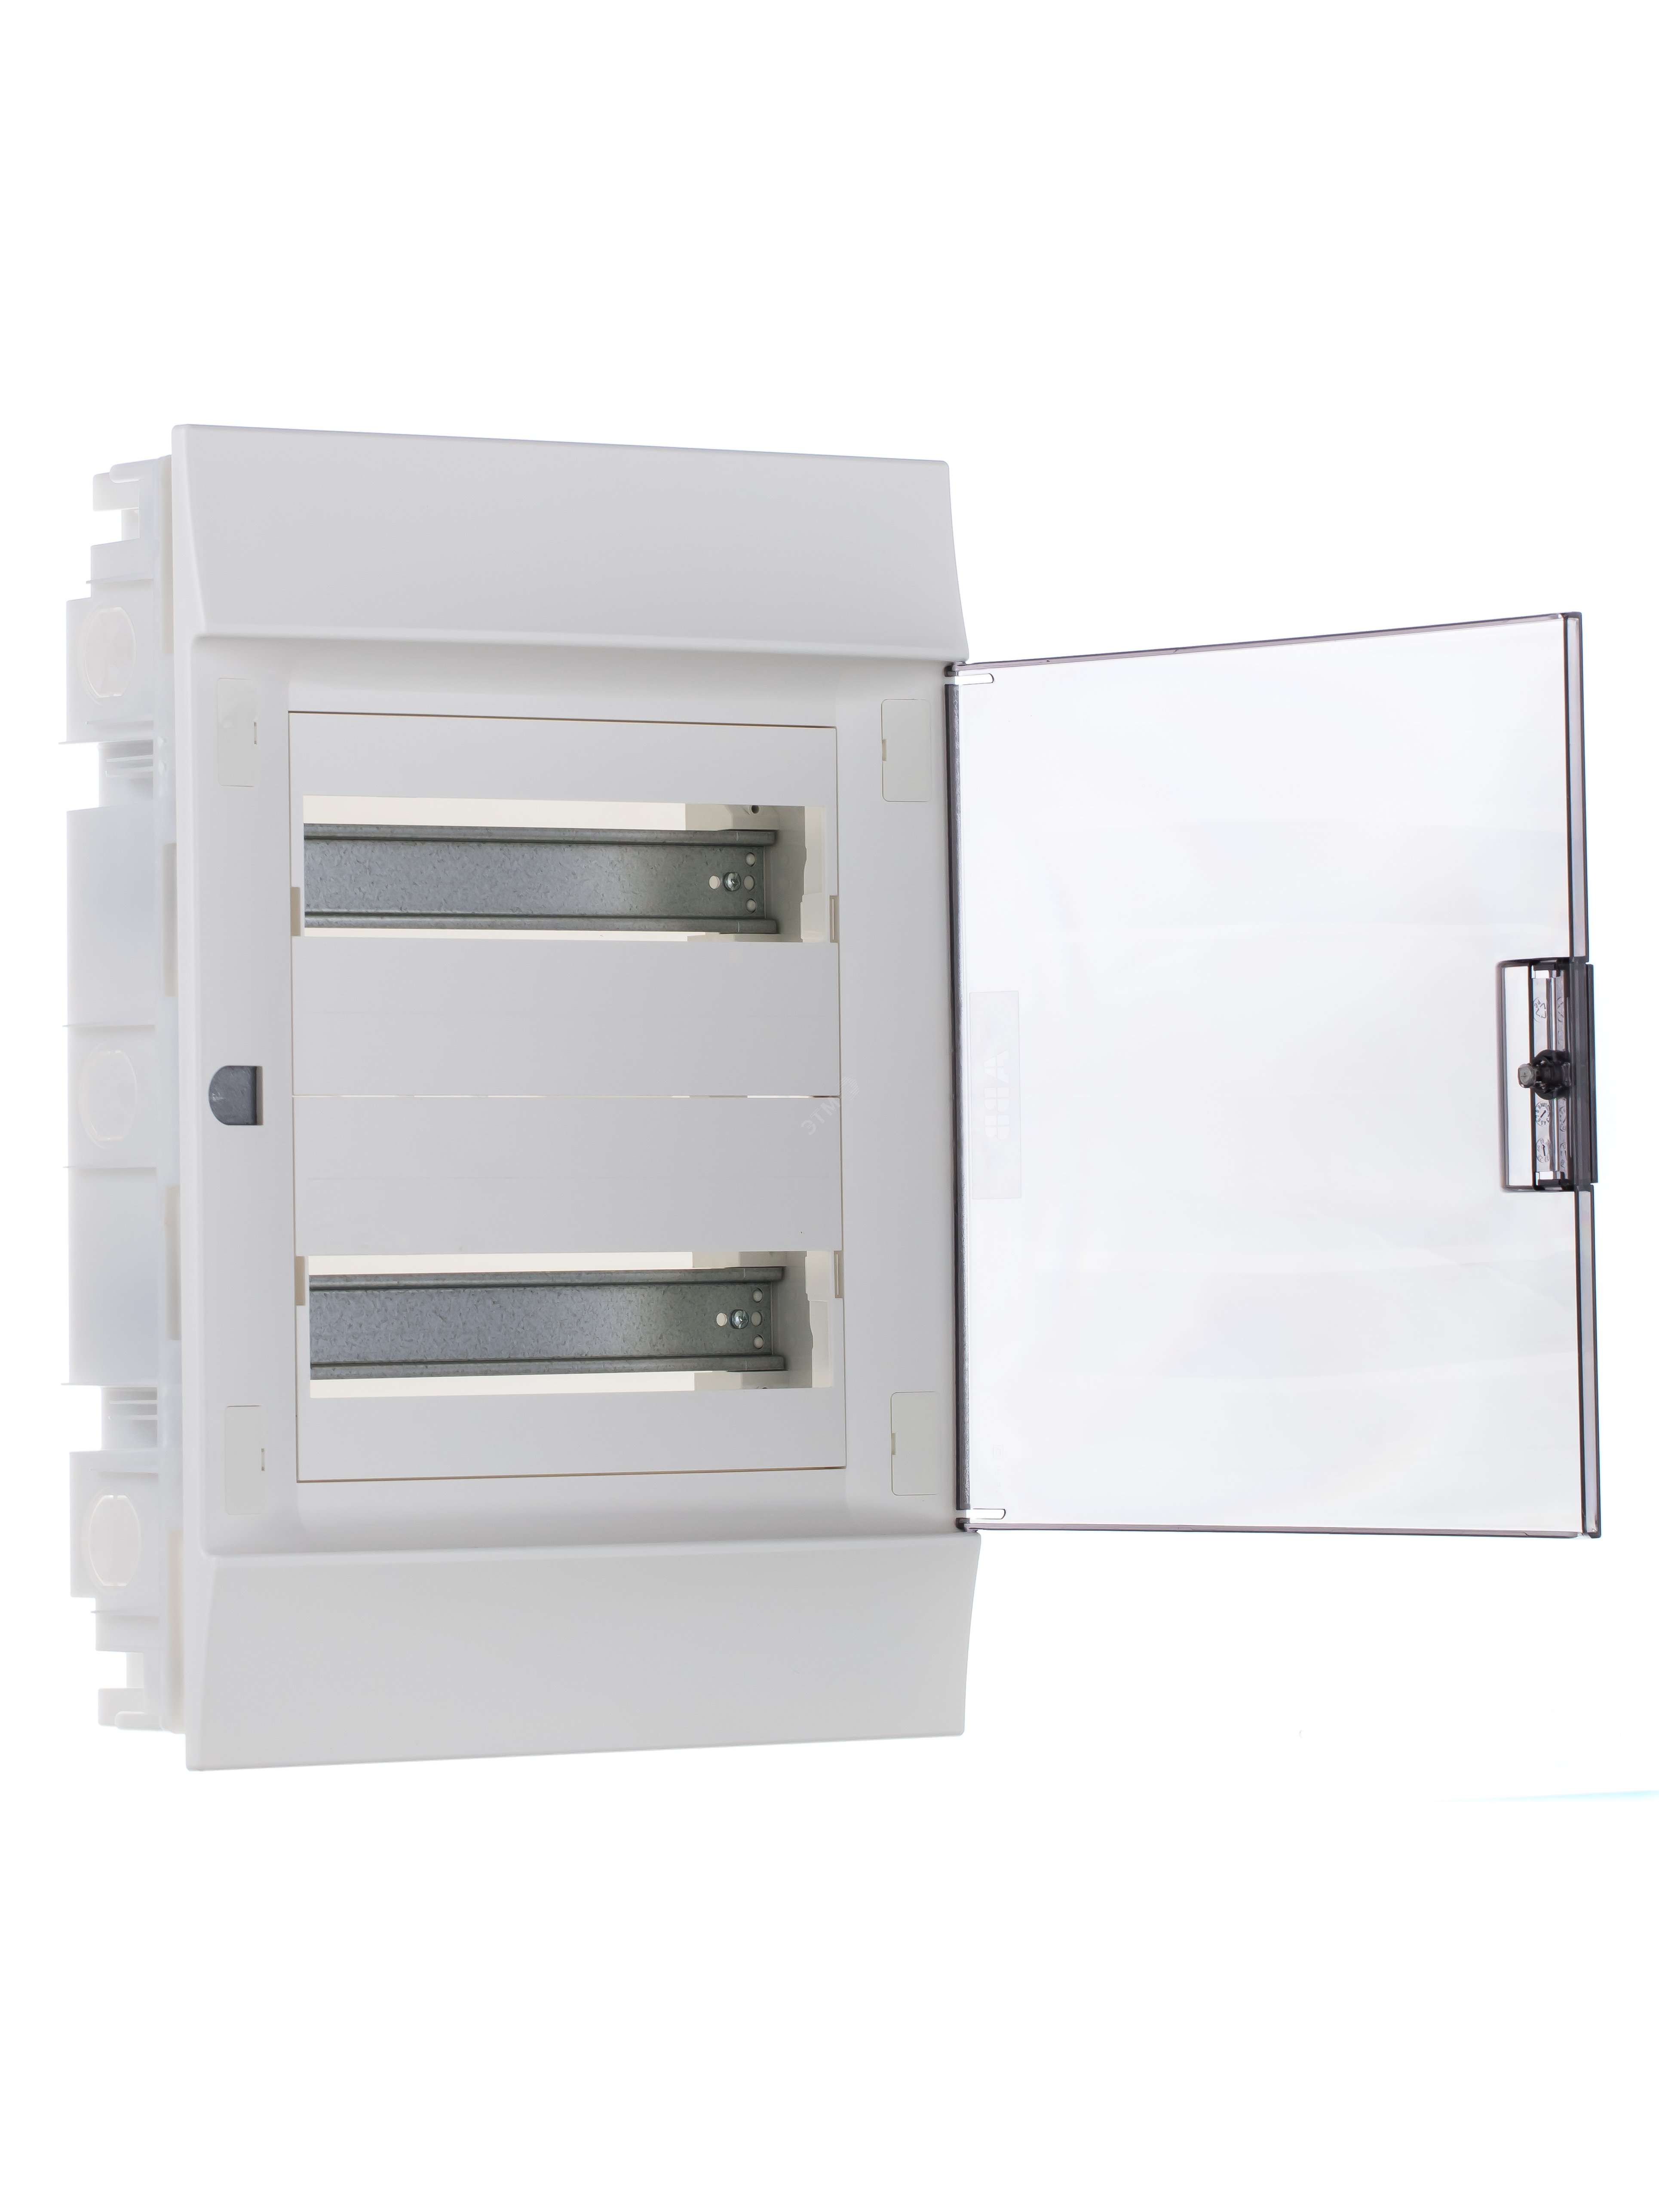 Щит распределительный встраиваемый ЩРв-п-24 пластиковый Mistral41 серая прозрачная дверь с клеммами IP41 (41A12X23B) 1SLM004101A2205 ABB - превью 5